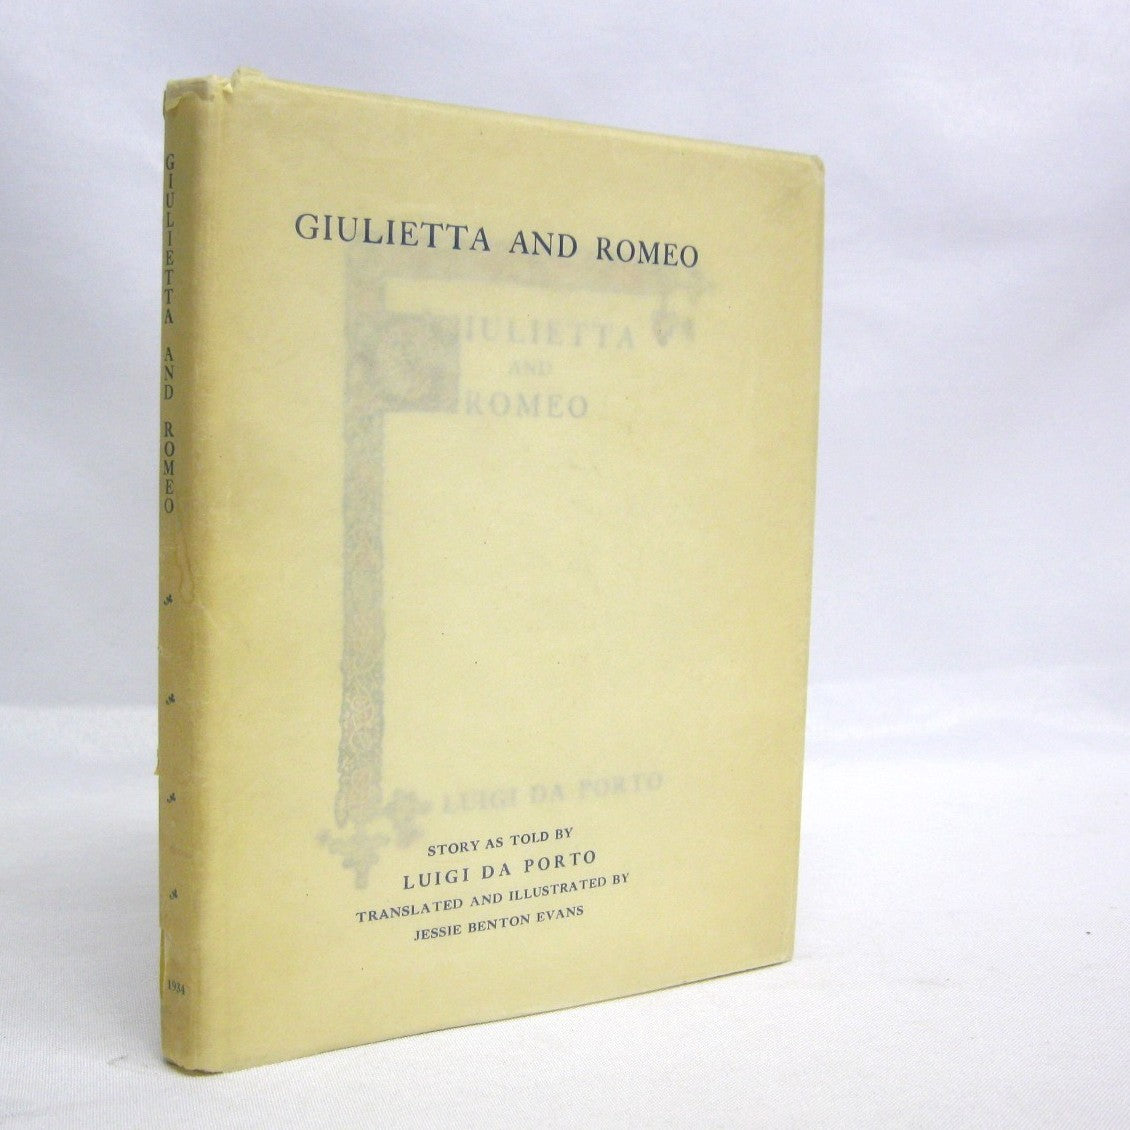 Giulietta and Romeo by Luigi da Porto